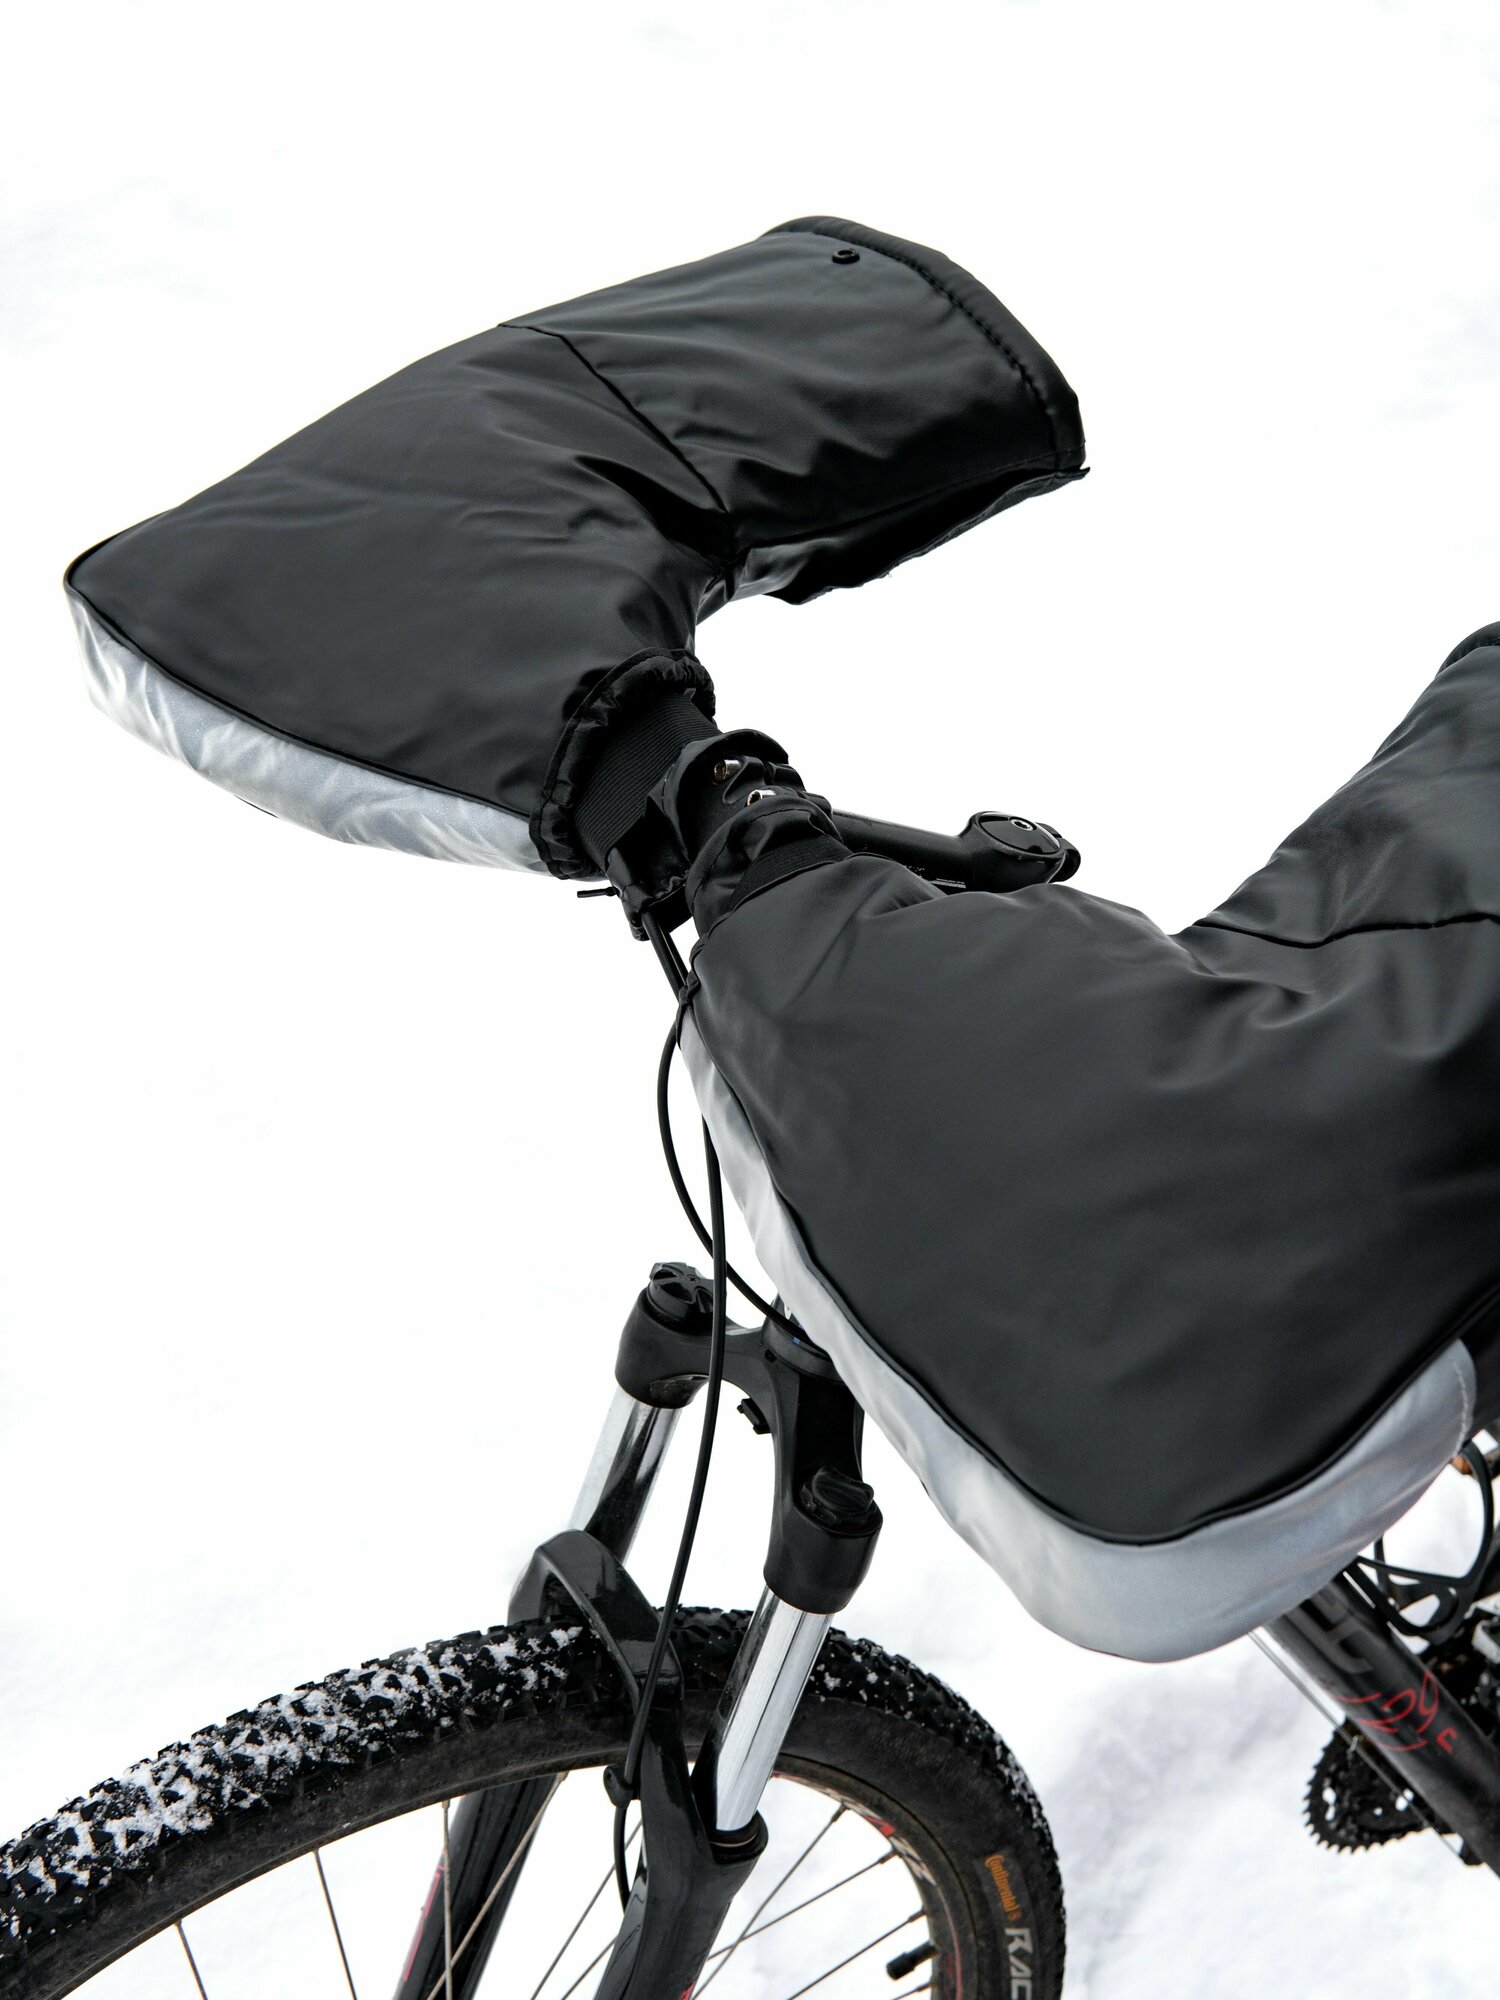 Утепленные непромокаемые Муфты-варежки на руль: для велосипеда мопеда снегохода мотоцикла